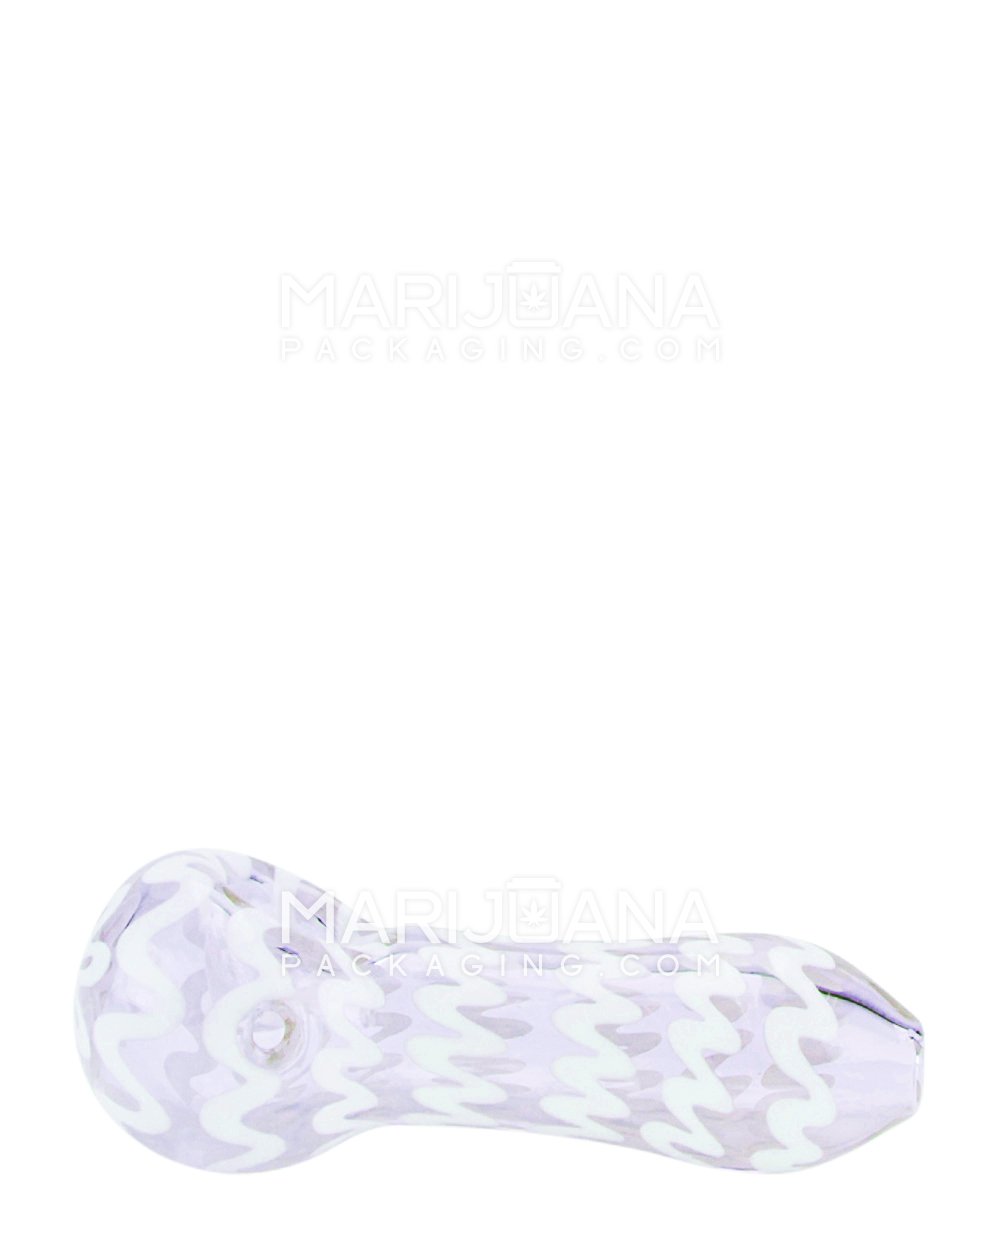 Swirl Spoon Hand Pipe | 4in Long - Glass - Purple - 2